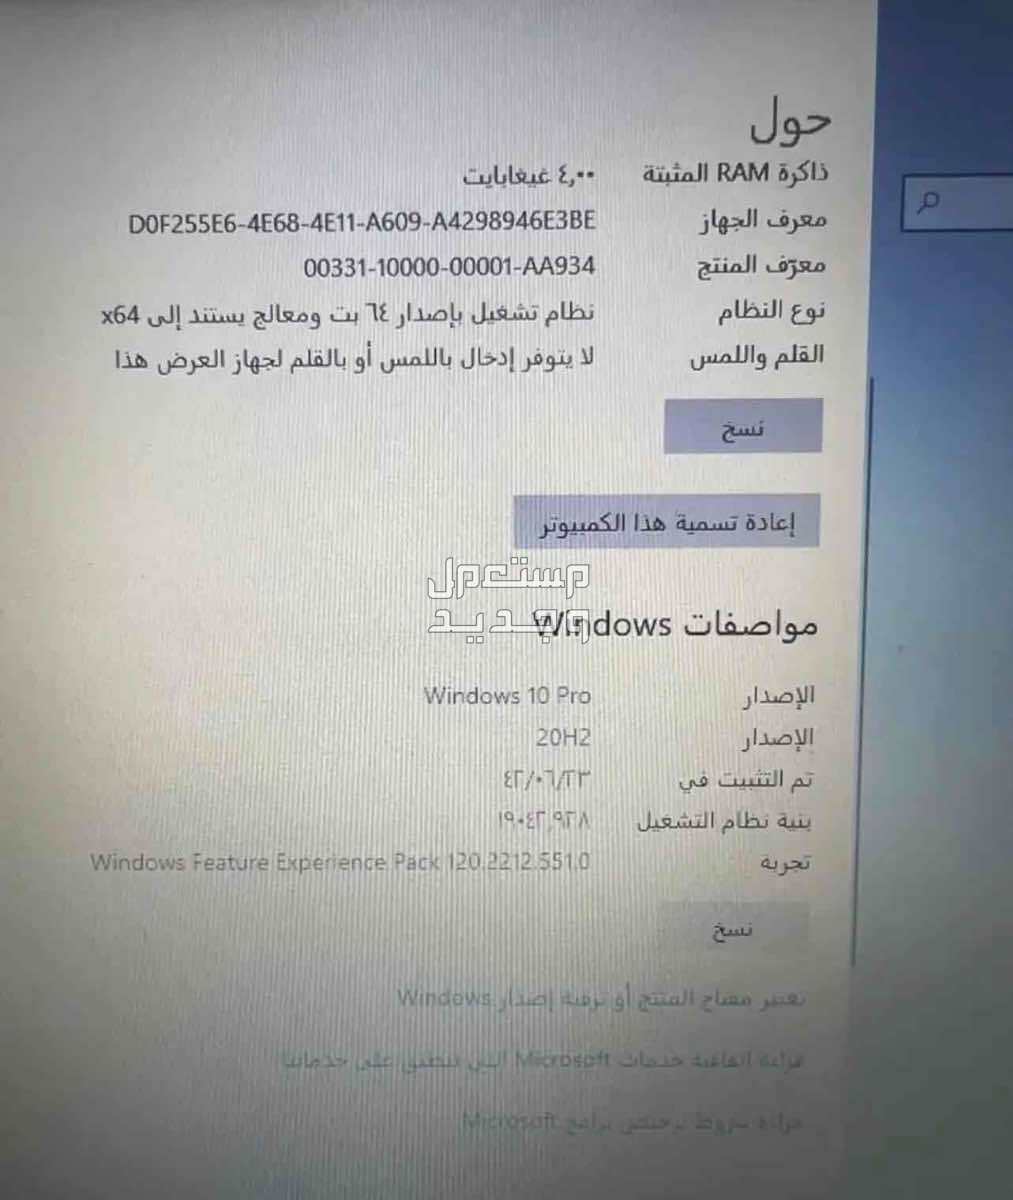 العزيزية  ماركة ديل في الرياض بسعر 550 ريال سعودي لابتوب ديل نظيف وبكامل ملحقاته